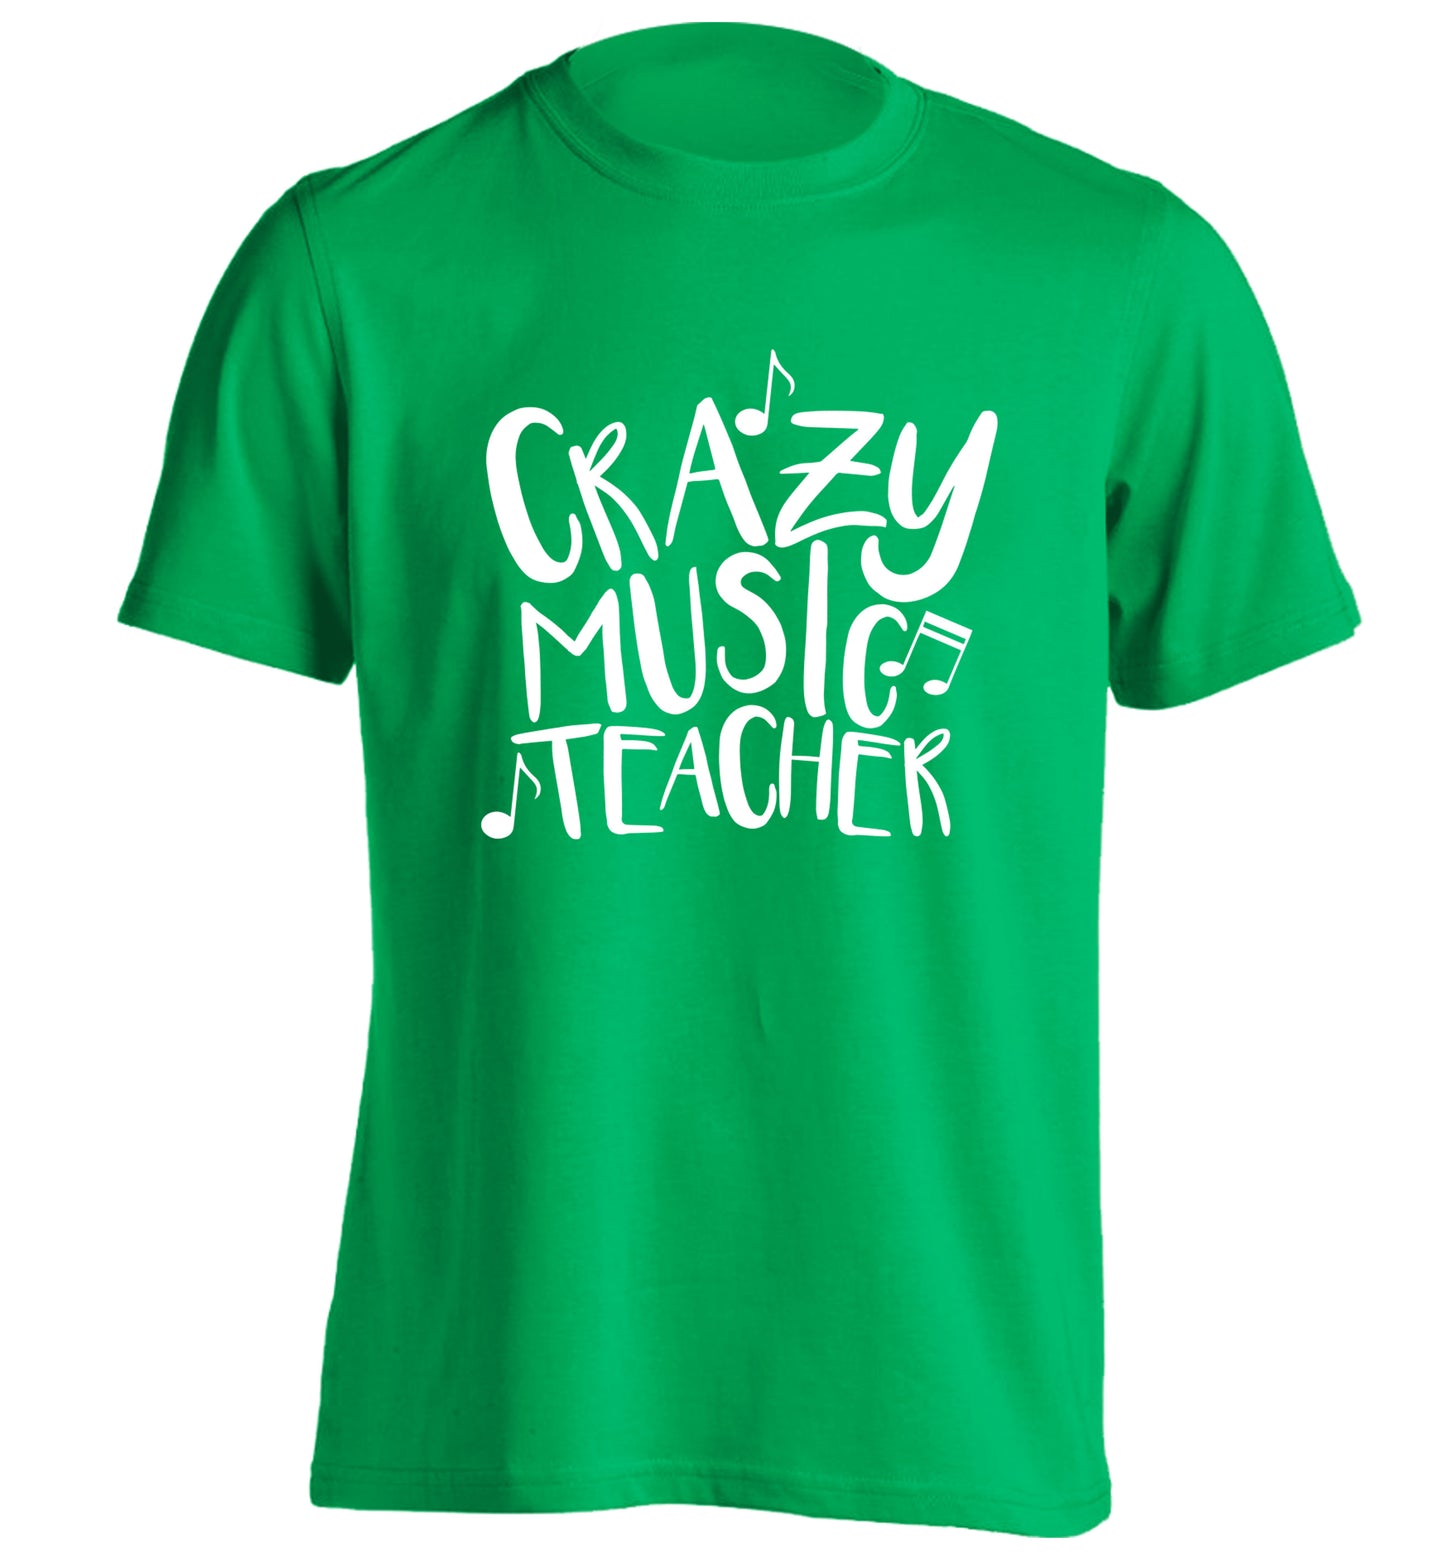 Crazy music teacher adults unisex green Tshirt 2XL